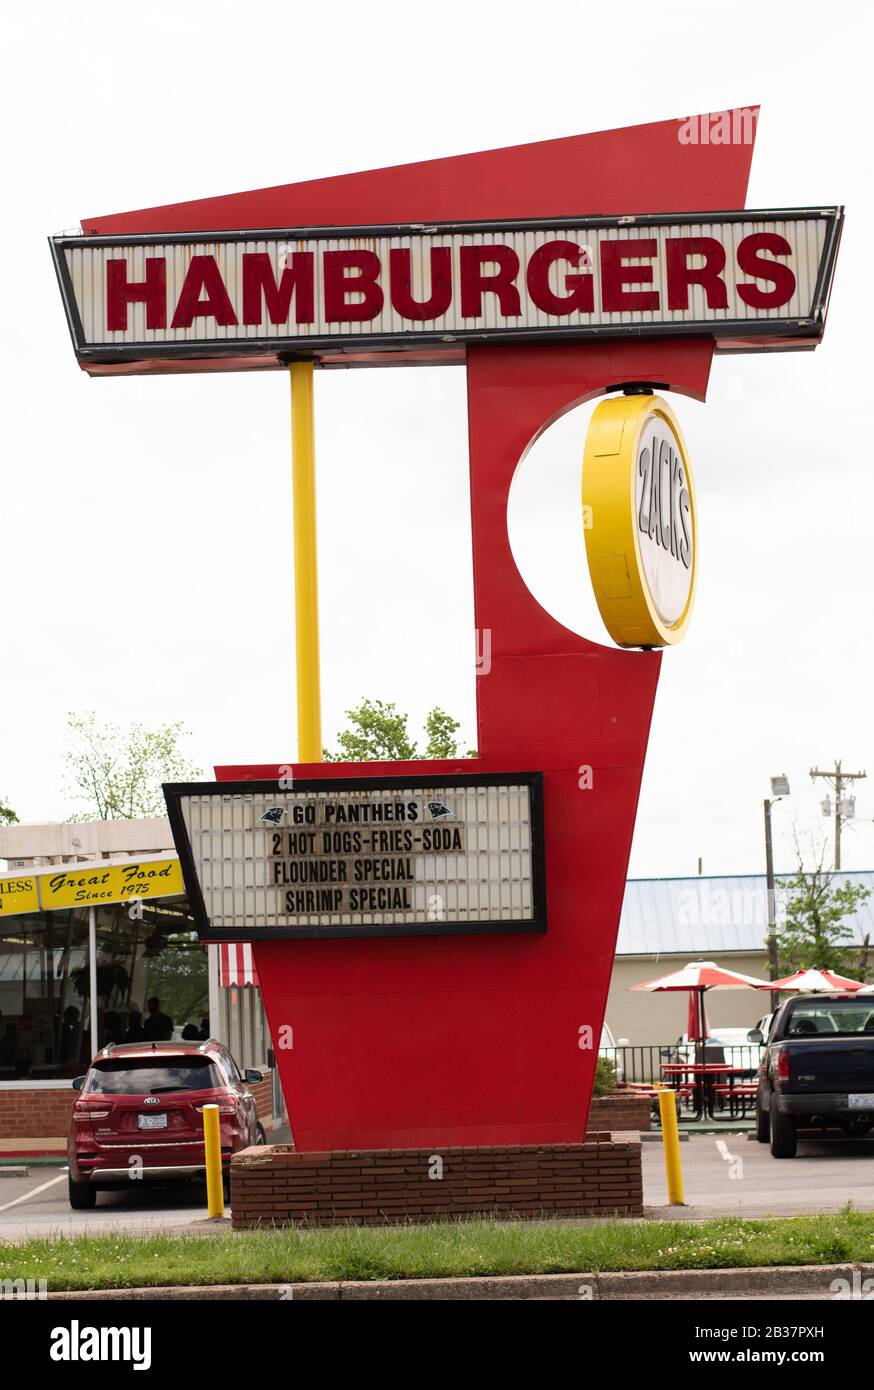 Charlotte, NC/USA - 26 avril 2019: Photo verticale des hamburgers de style années 1950 'Zacks signe sur pied montrant la marque de Zack et quelques publicités. Banque D'Images